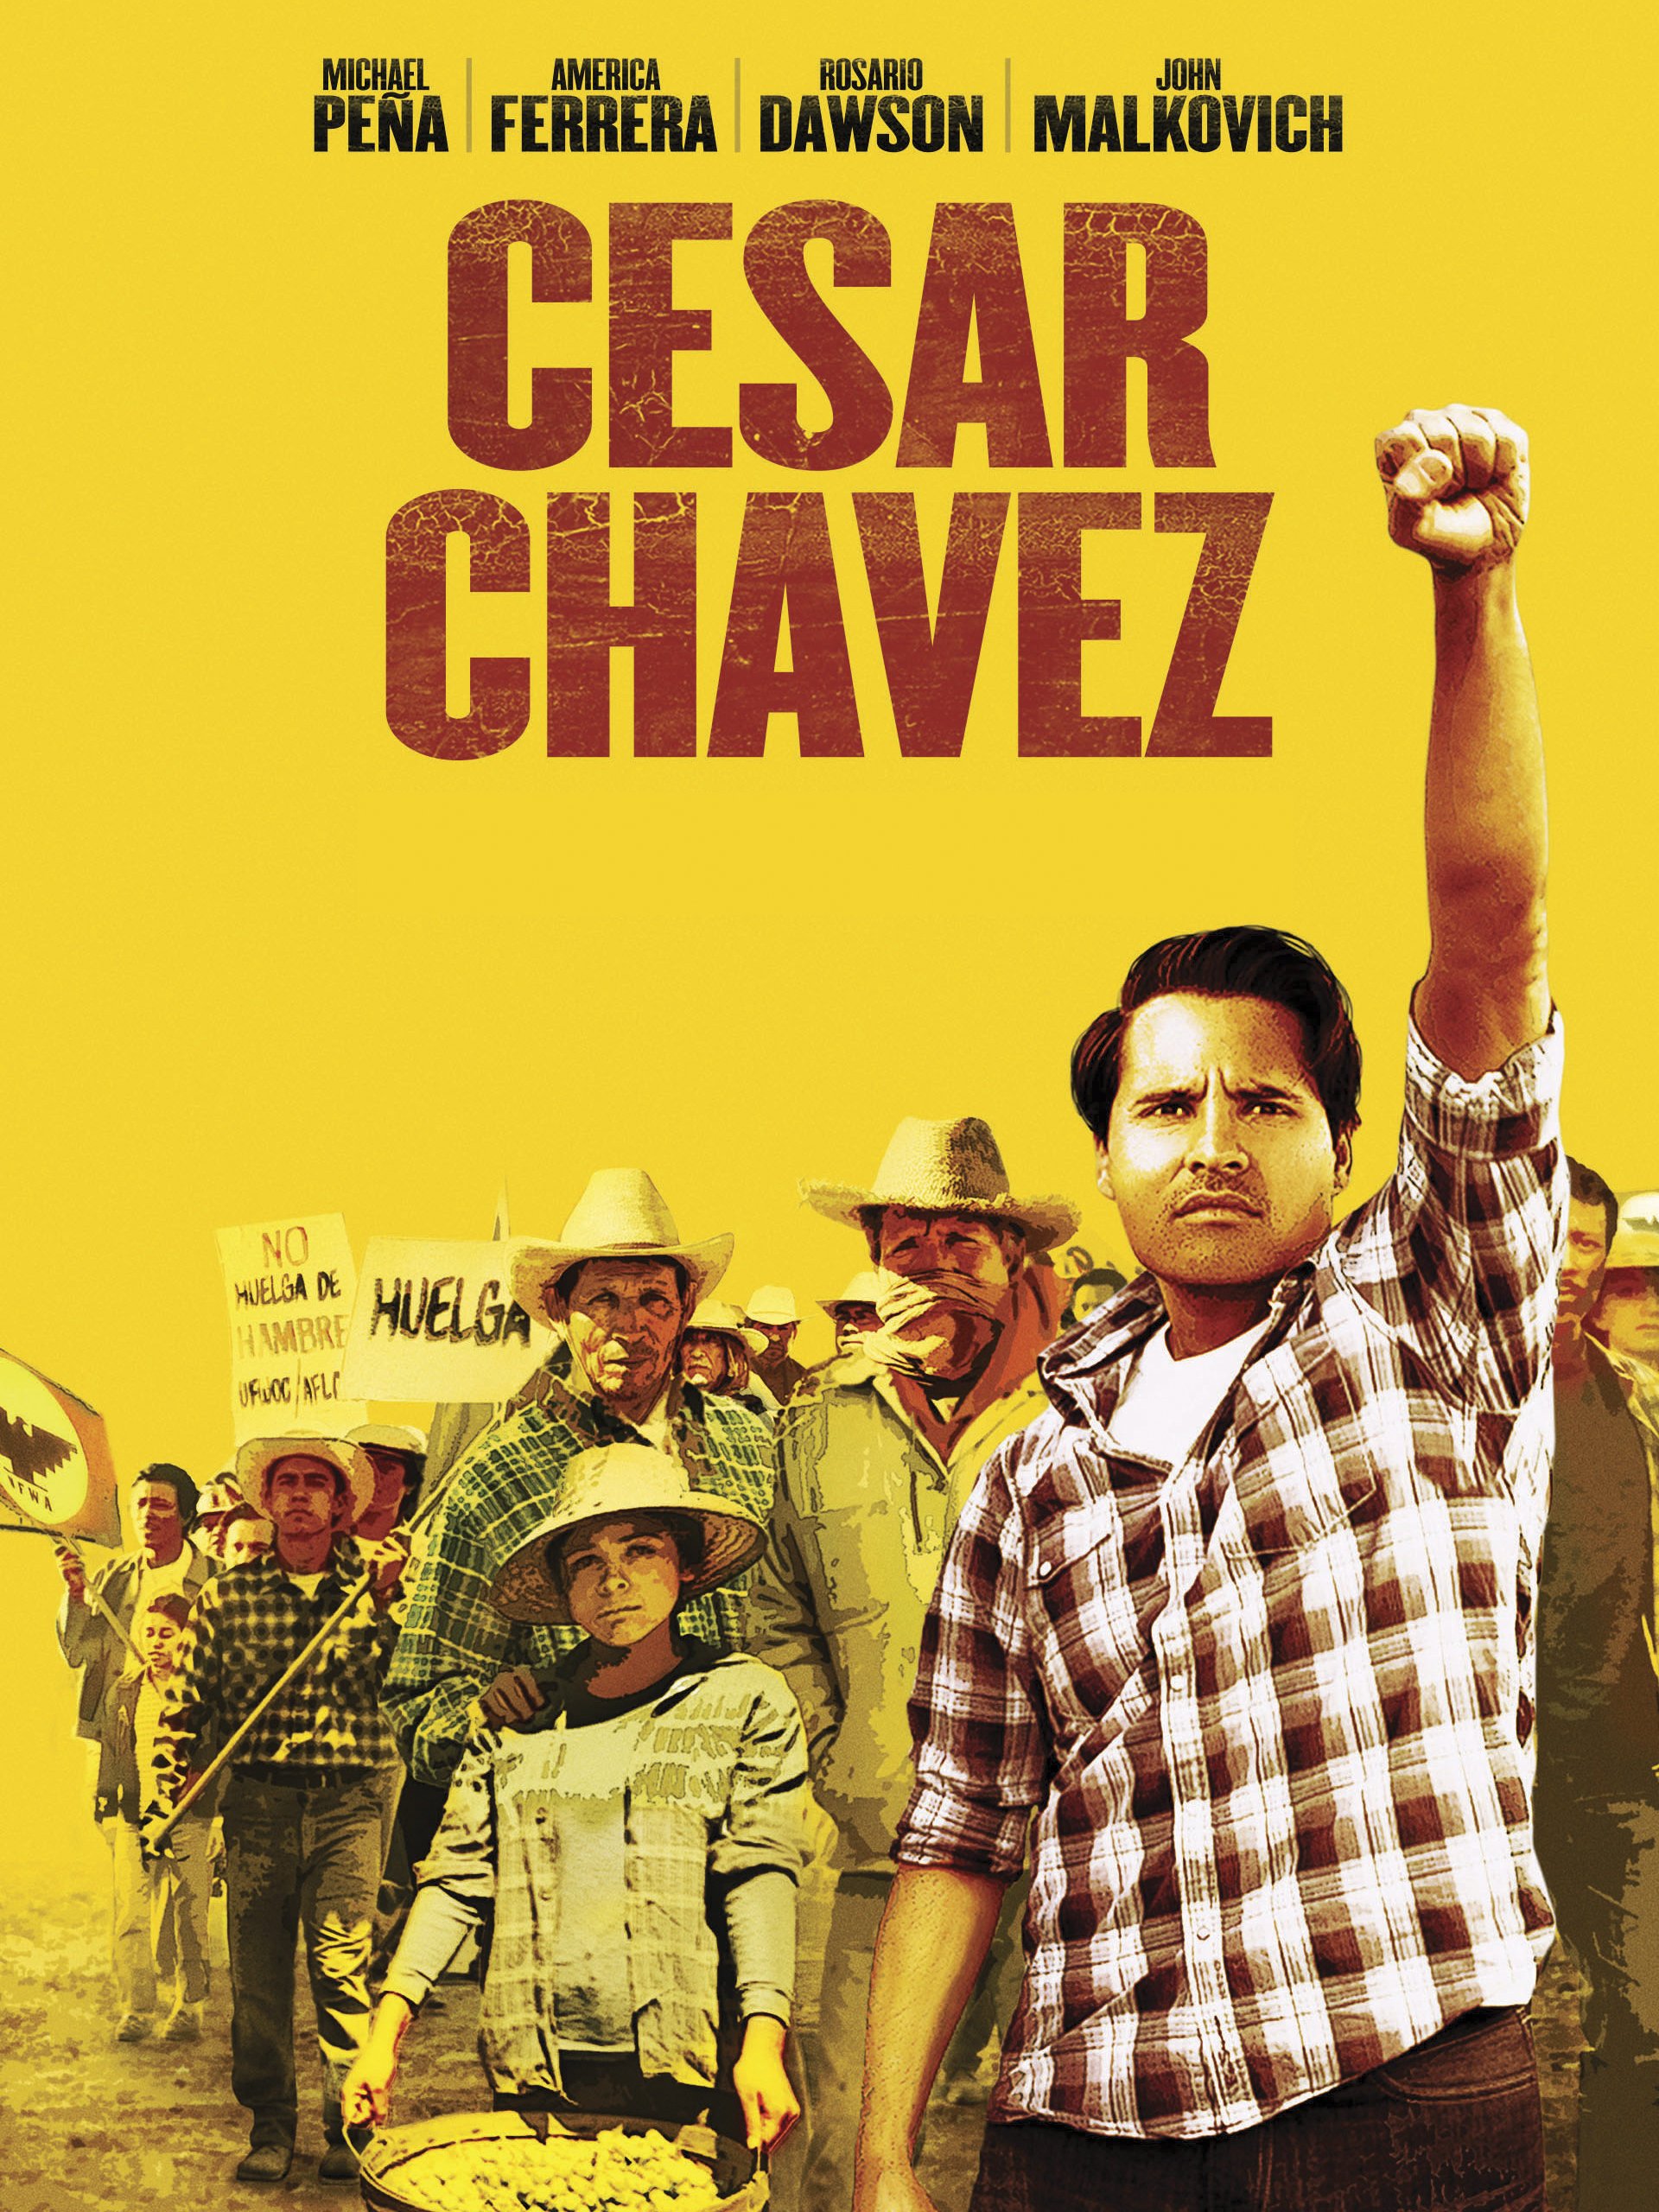 Cesar Chavez movie still